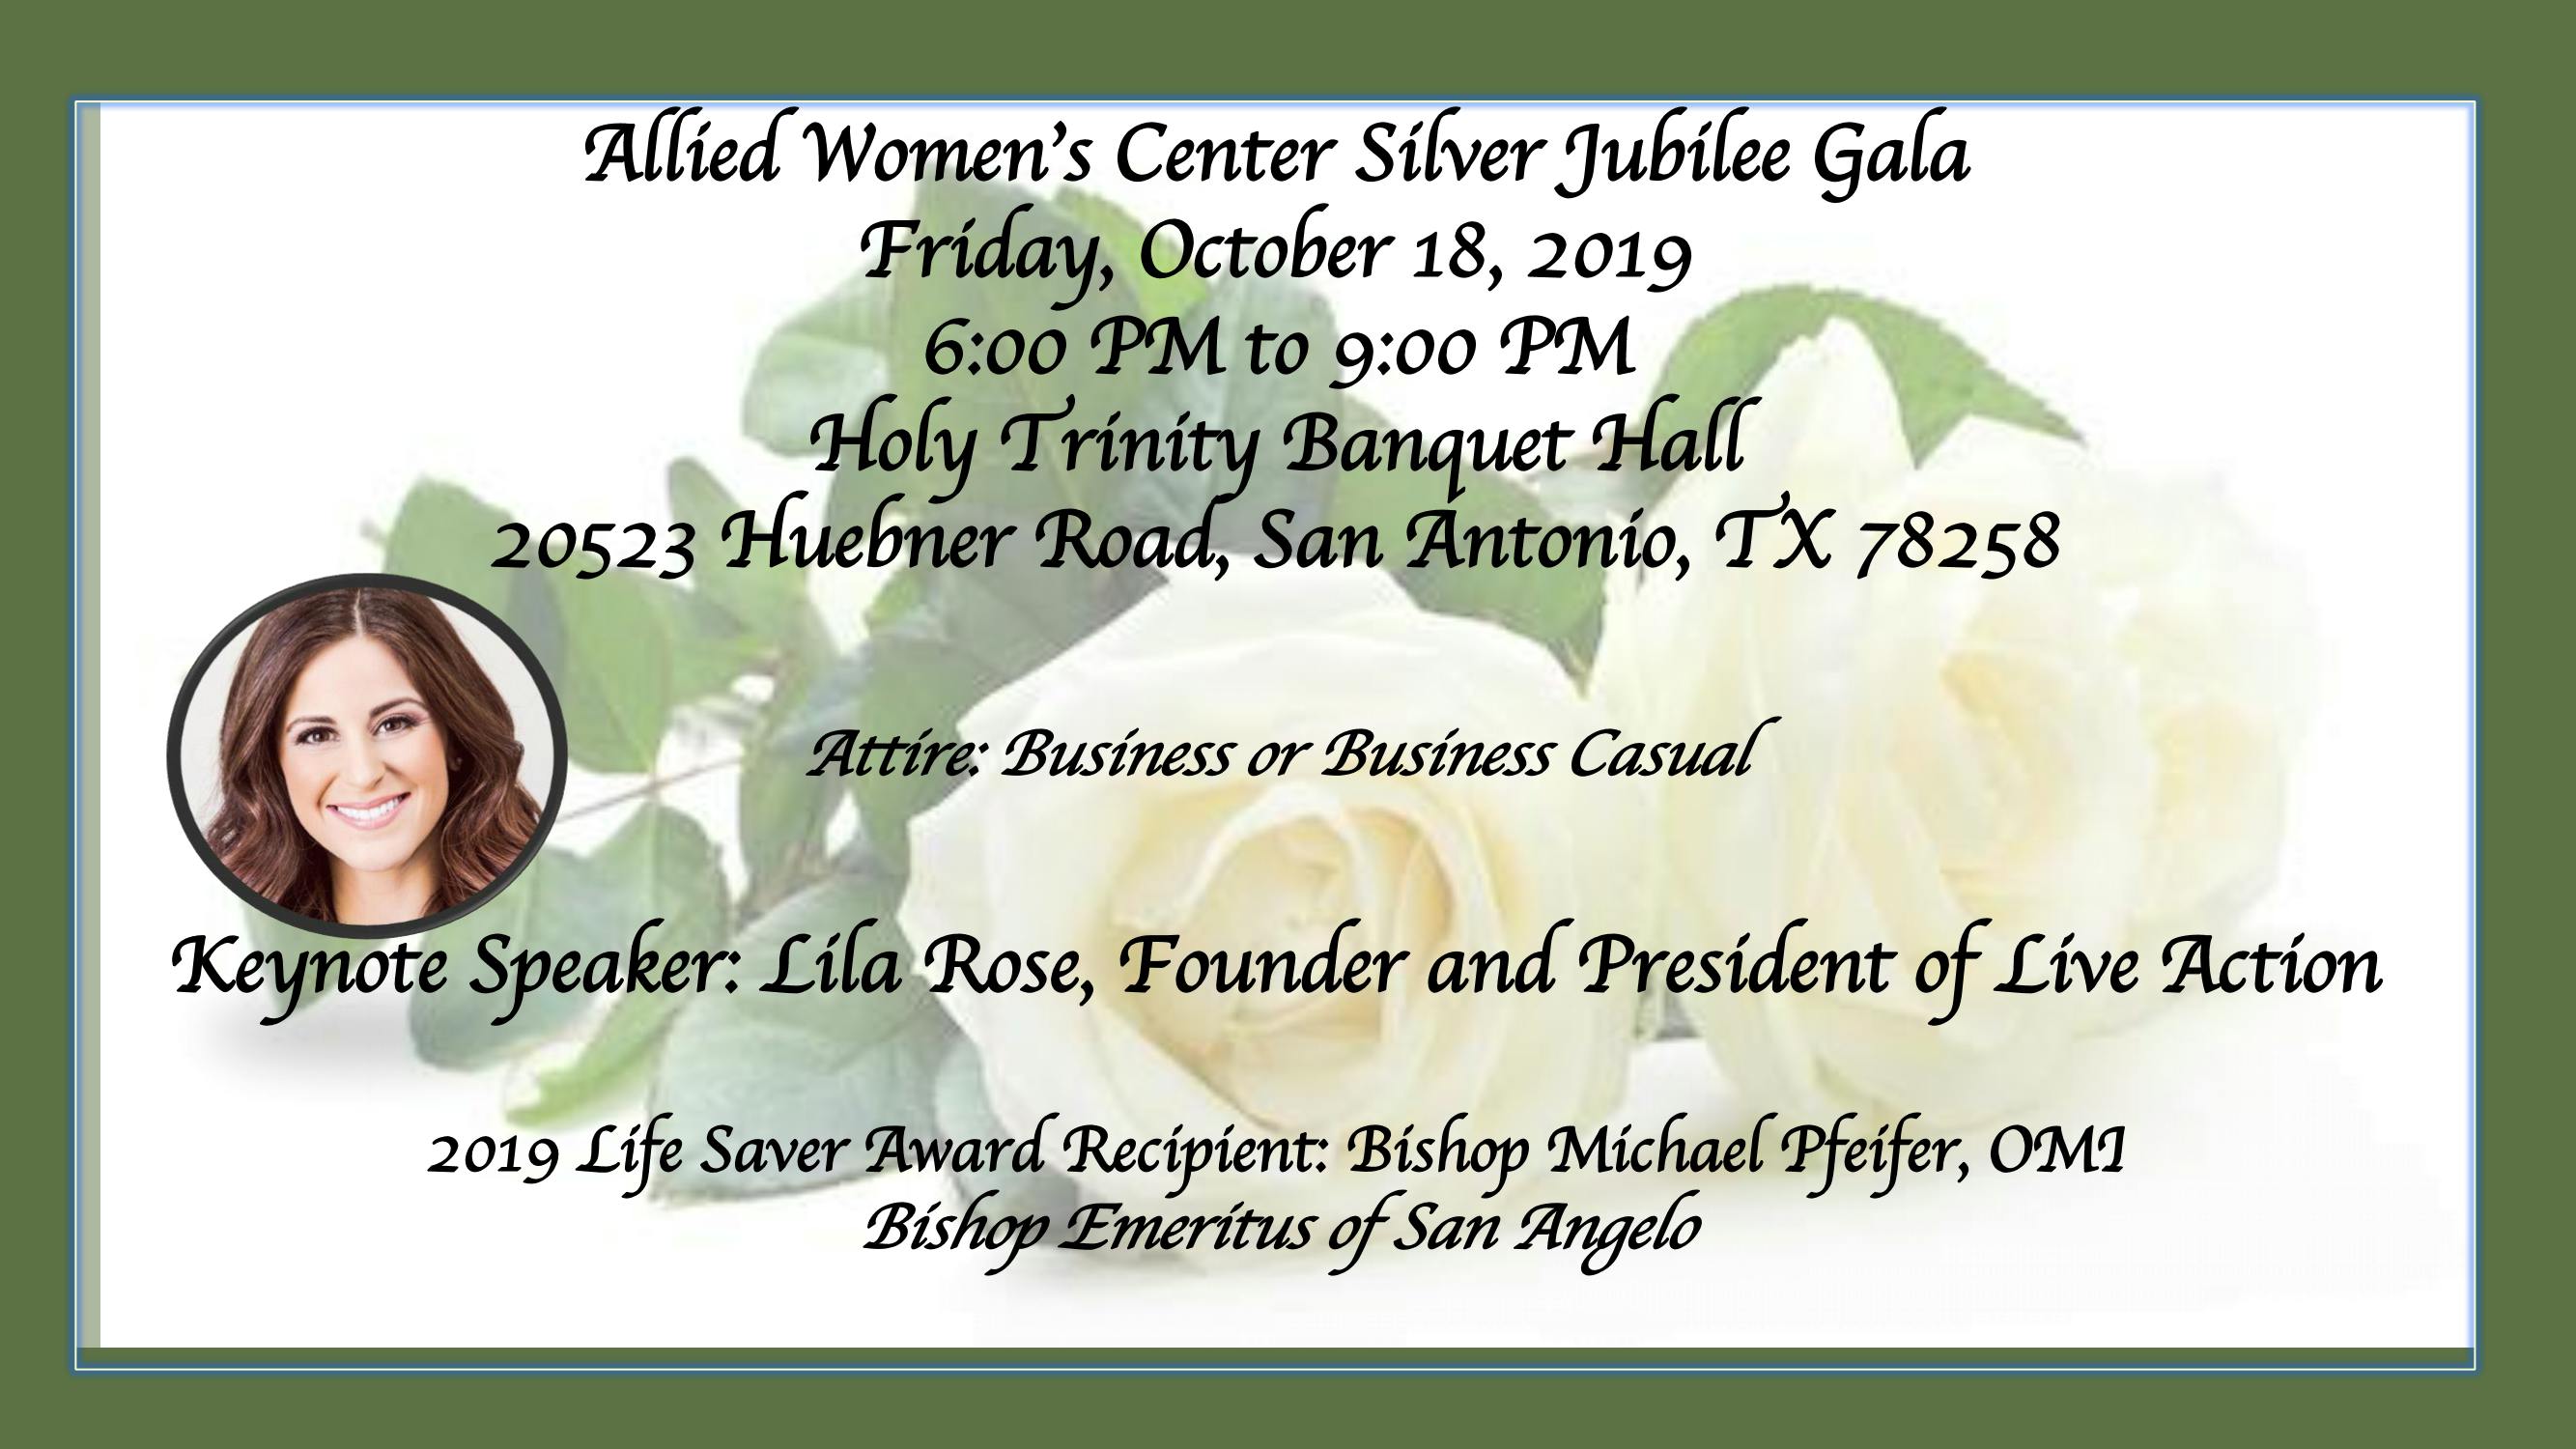 Allied Women's Center Silver Jubilee Gala